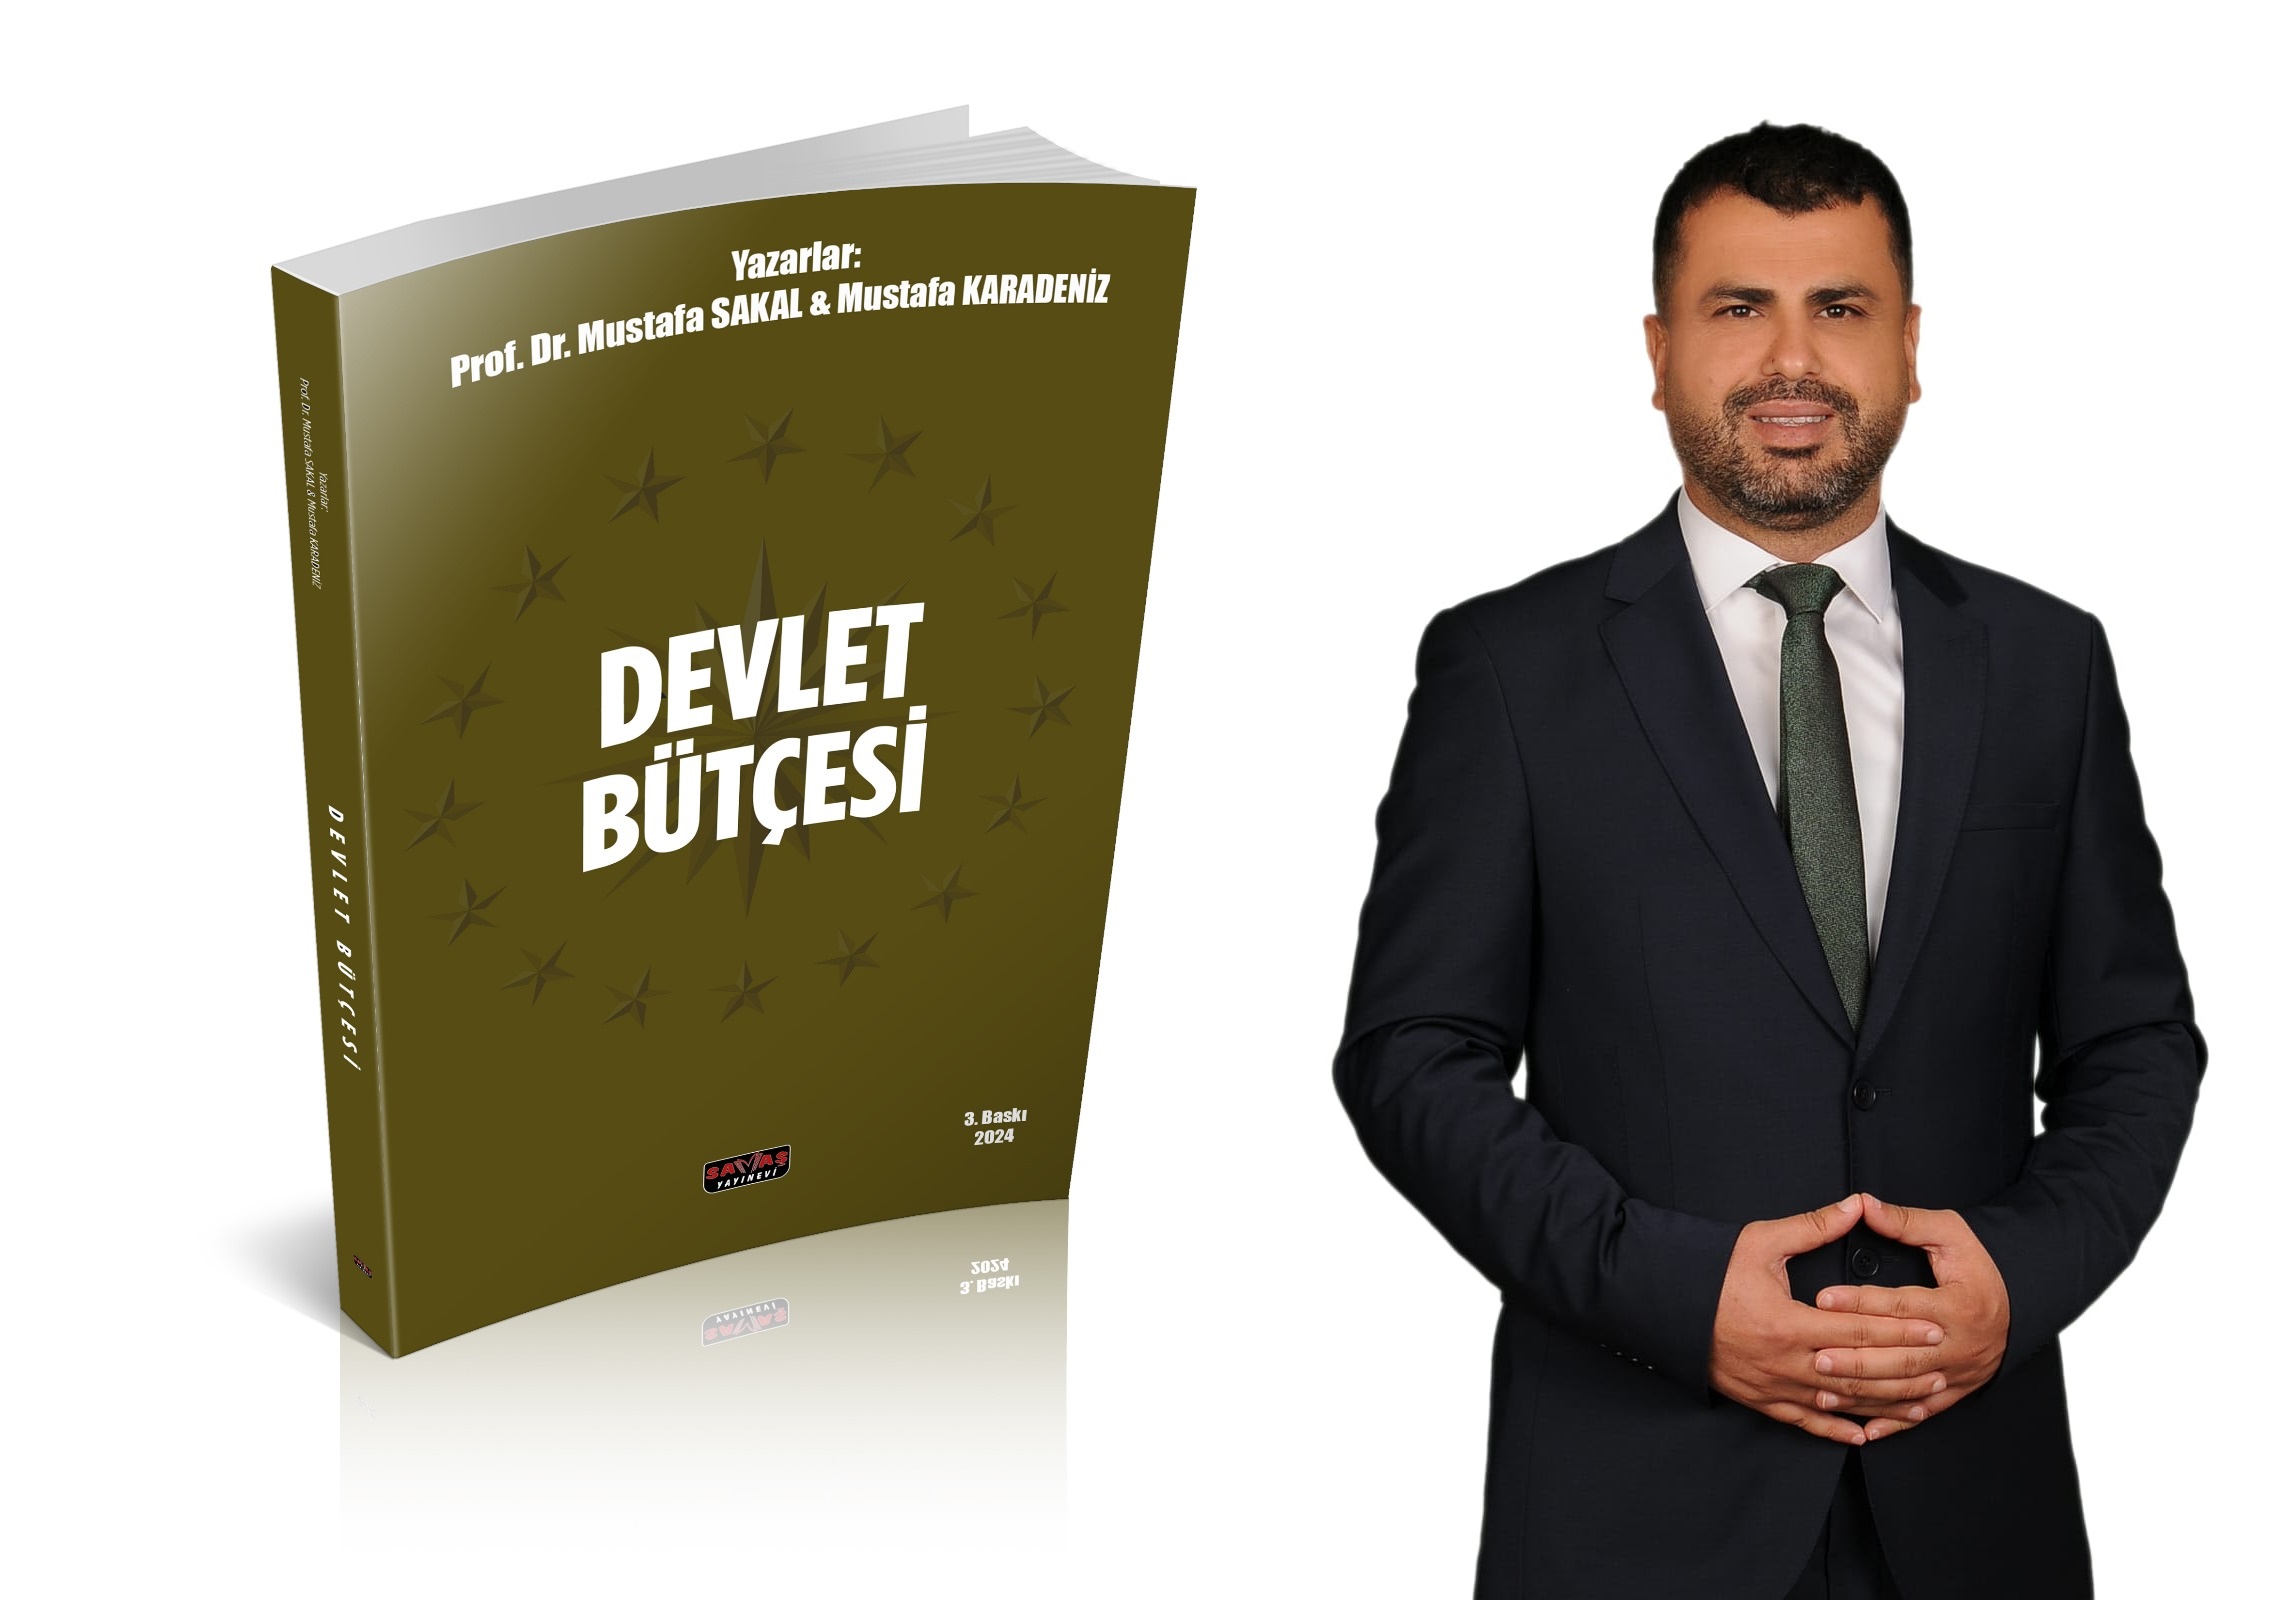 Karadeniz’in Devlet Bütçesi kitabının yeni baskısı çıktı